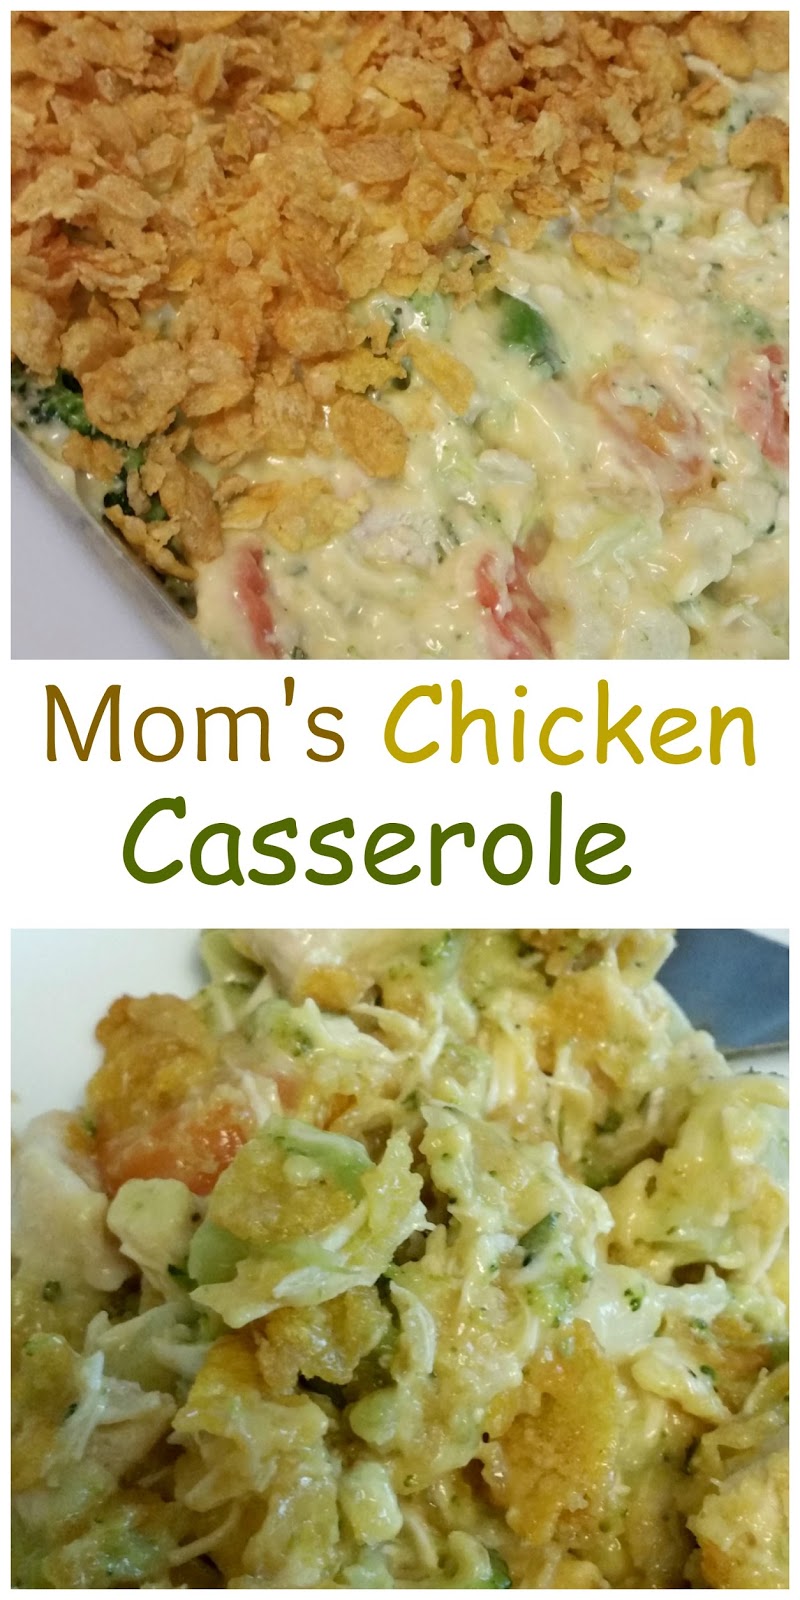 The Better Baker: Mom's Chicken Casserole